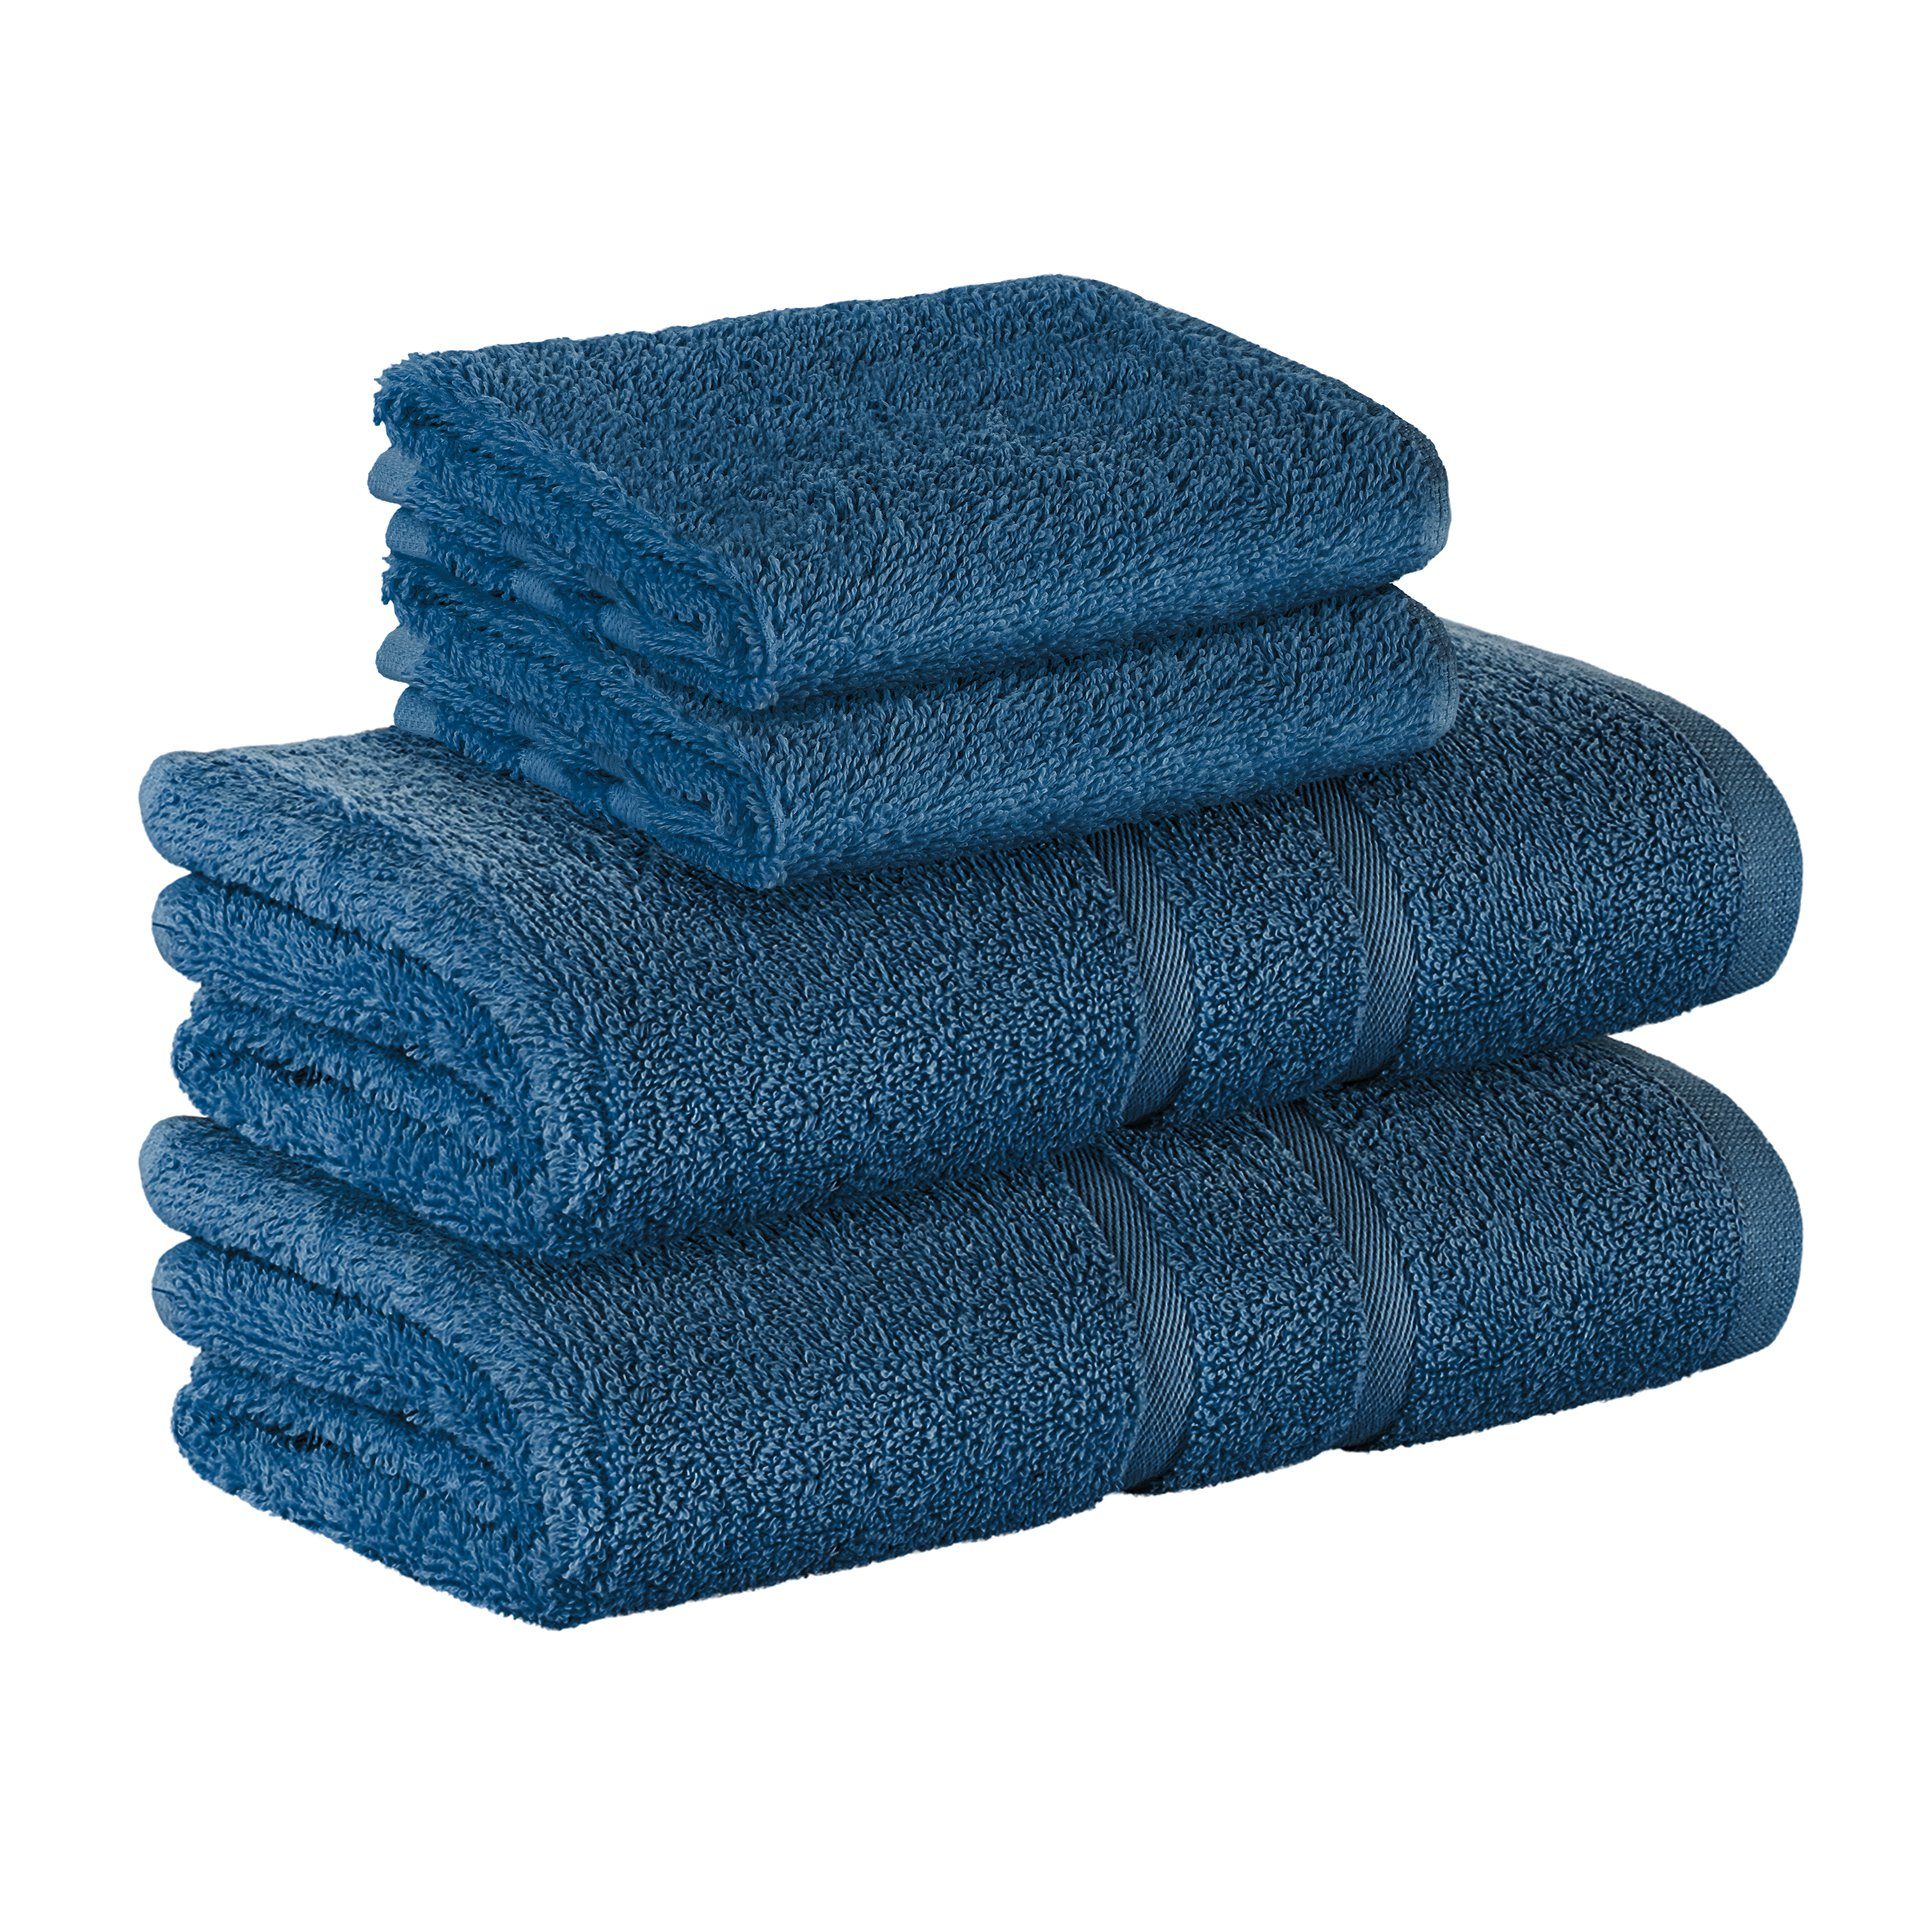 StickandShine Handtuch 2x Gästehandtuch 2x Handtücher als SET in verschiedenen Farben (4 Teilig) 100% Baumwolle 500 GSM Frottee 4er Handtuch Pack, 100% Baumwolle 500GSM Dunkelblau